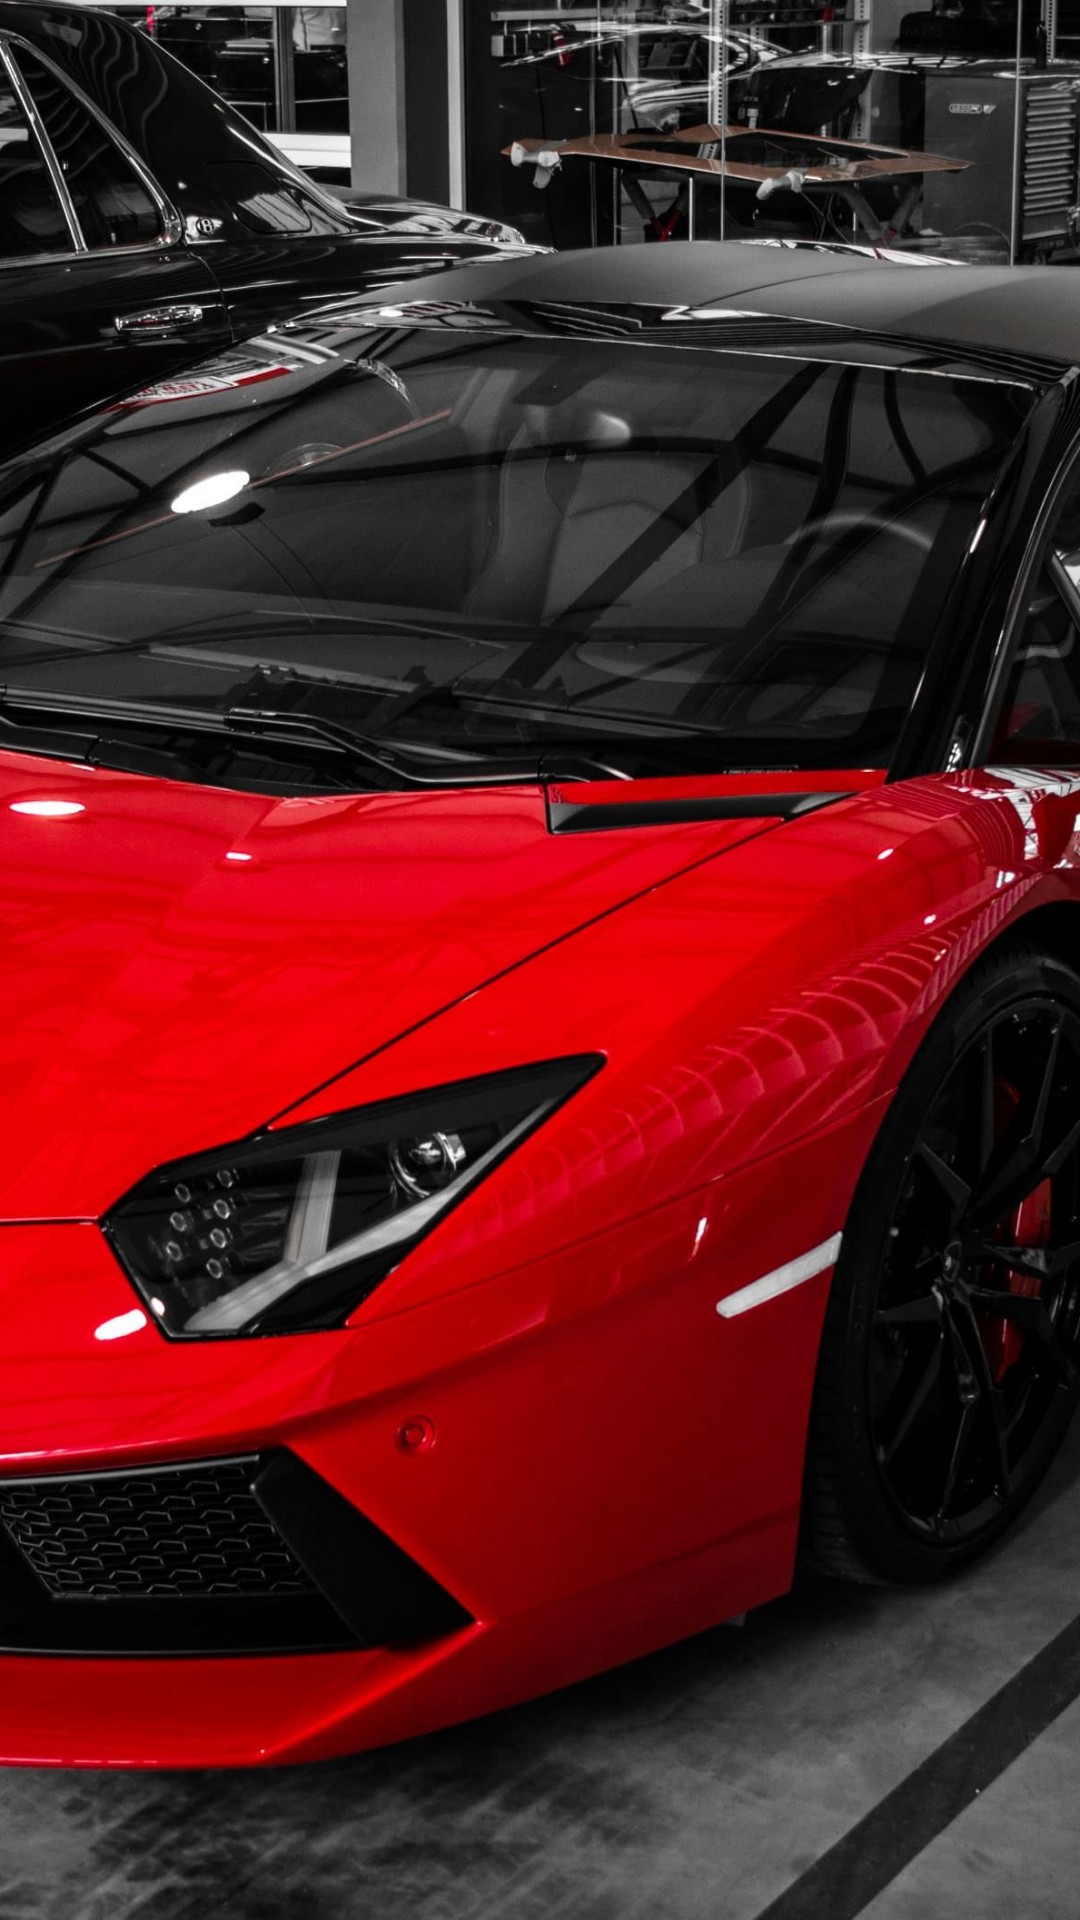 Red Lamborghini Aventador Wallpaper for SAMSUNG Galaxy Note 3